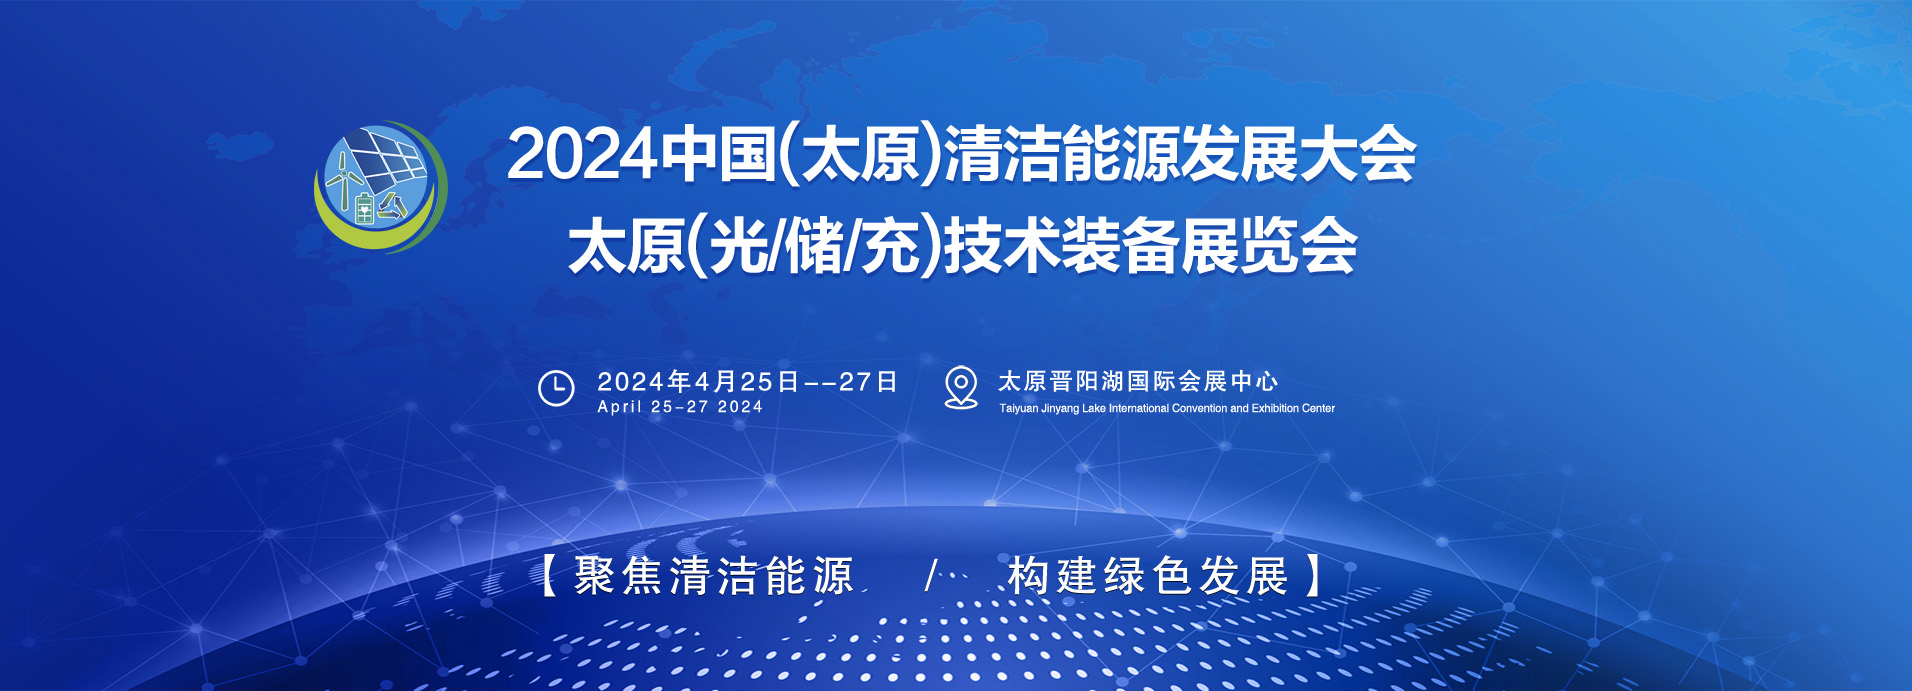 2024中国(太原)清洁能源发展大会暨博览会